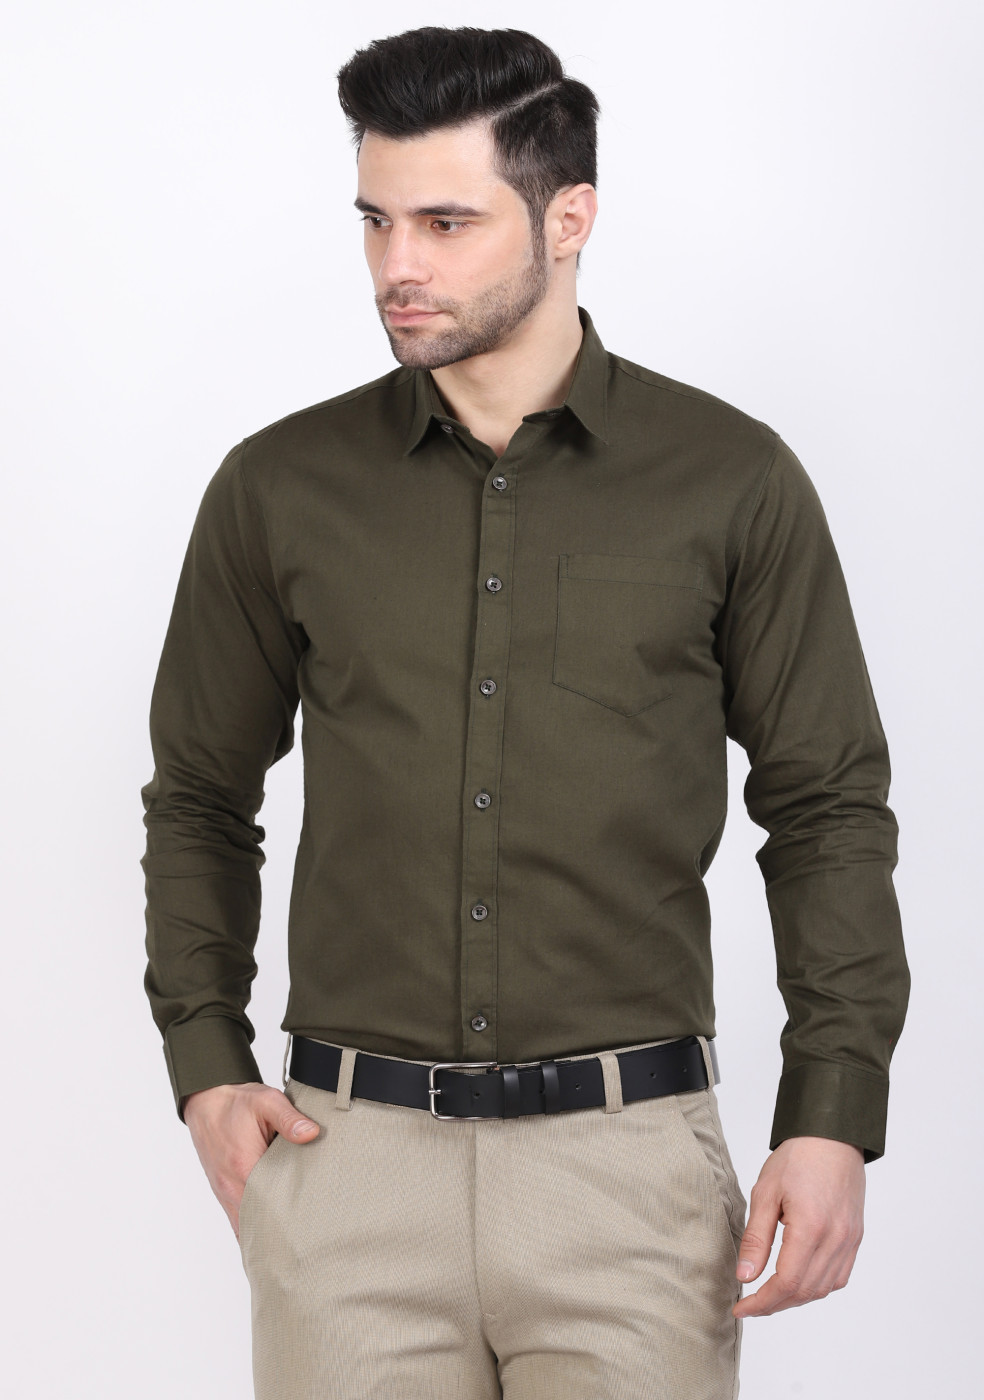 ASHTOM Green Plain Formal Cotton Shirt For Men